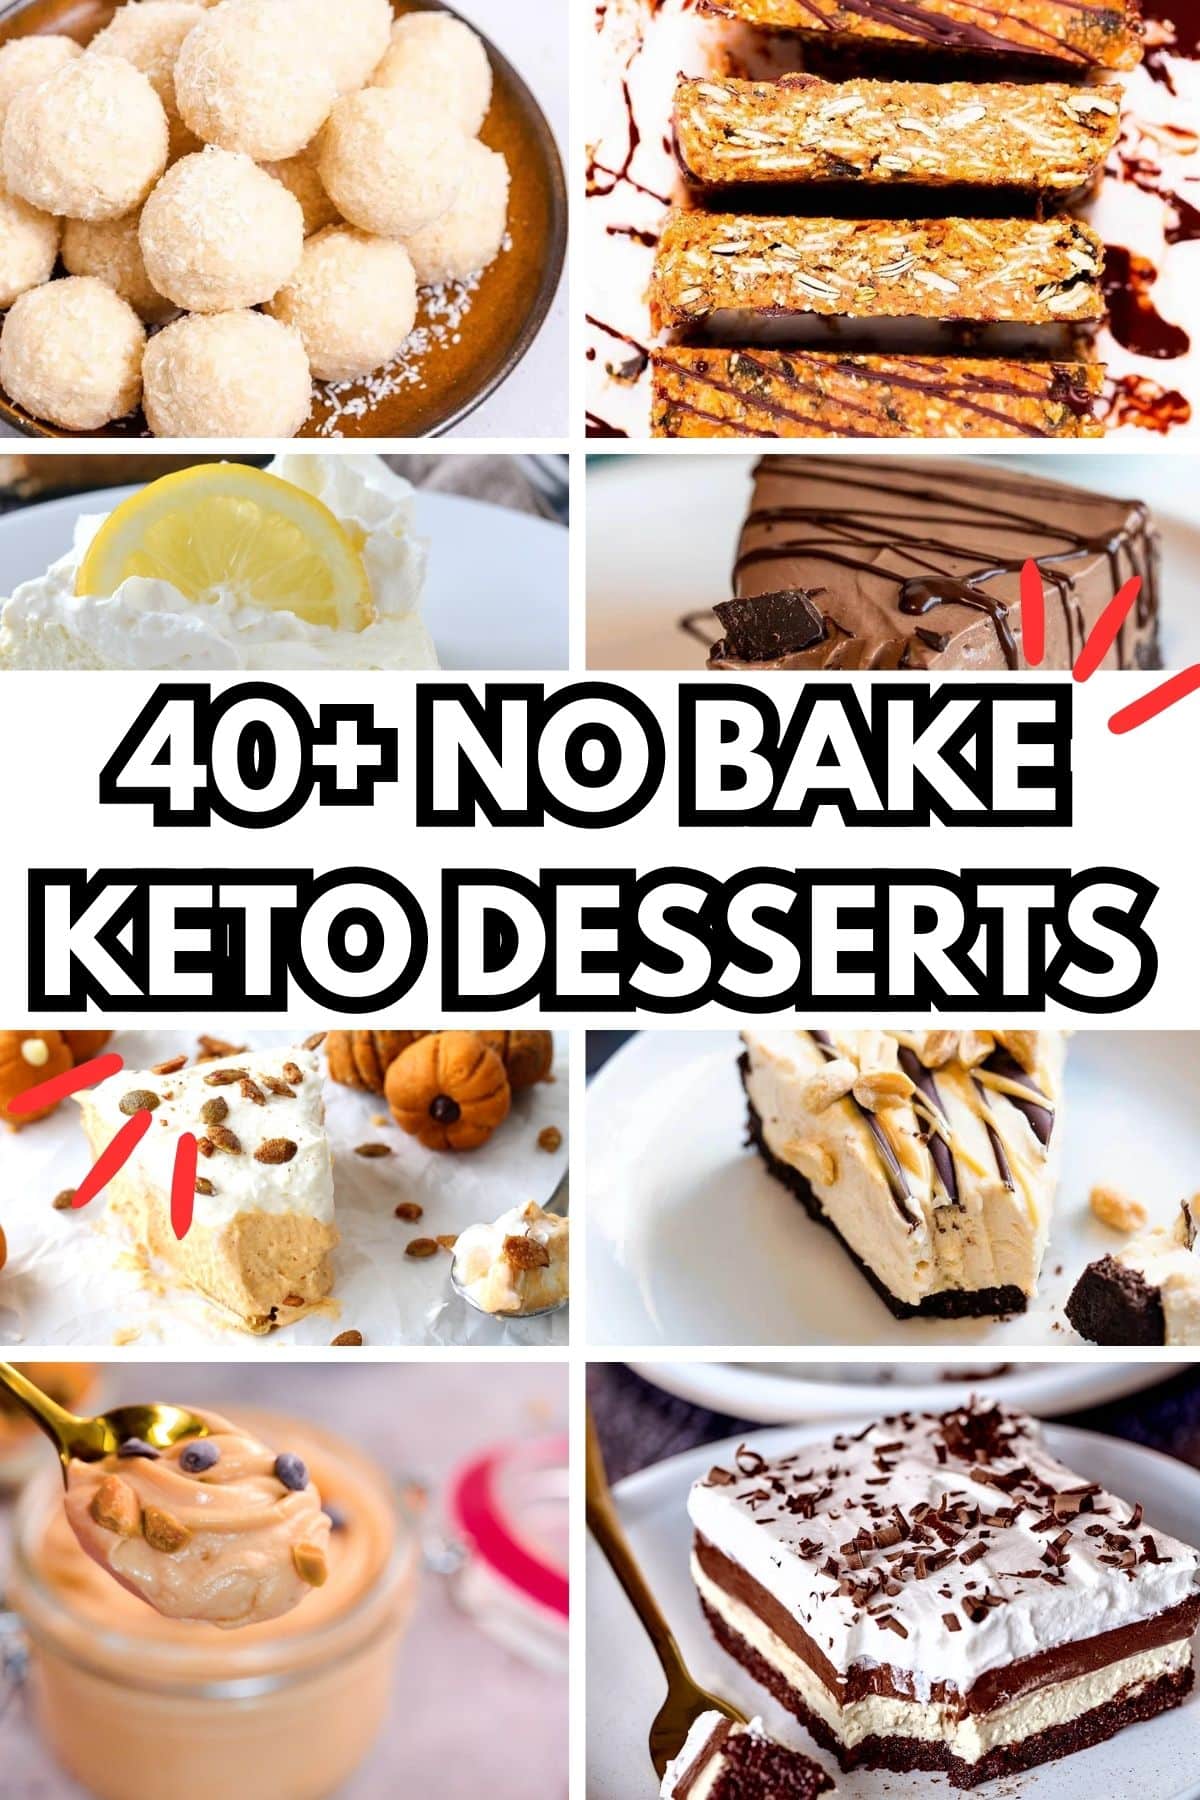 40+ No Bake Keto Desserts